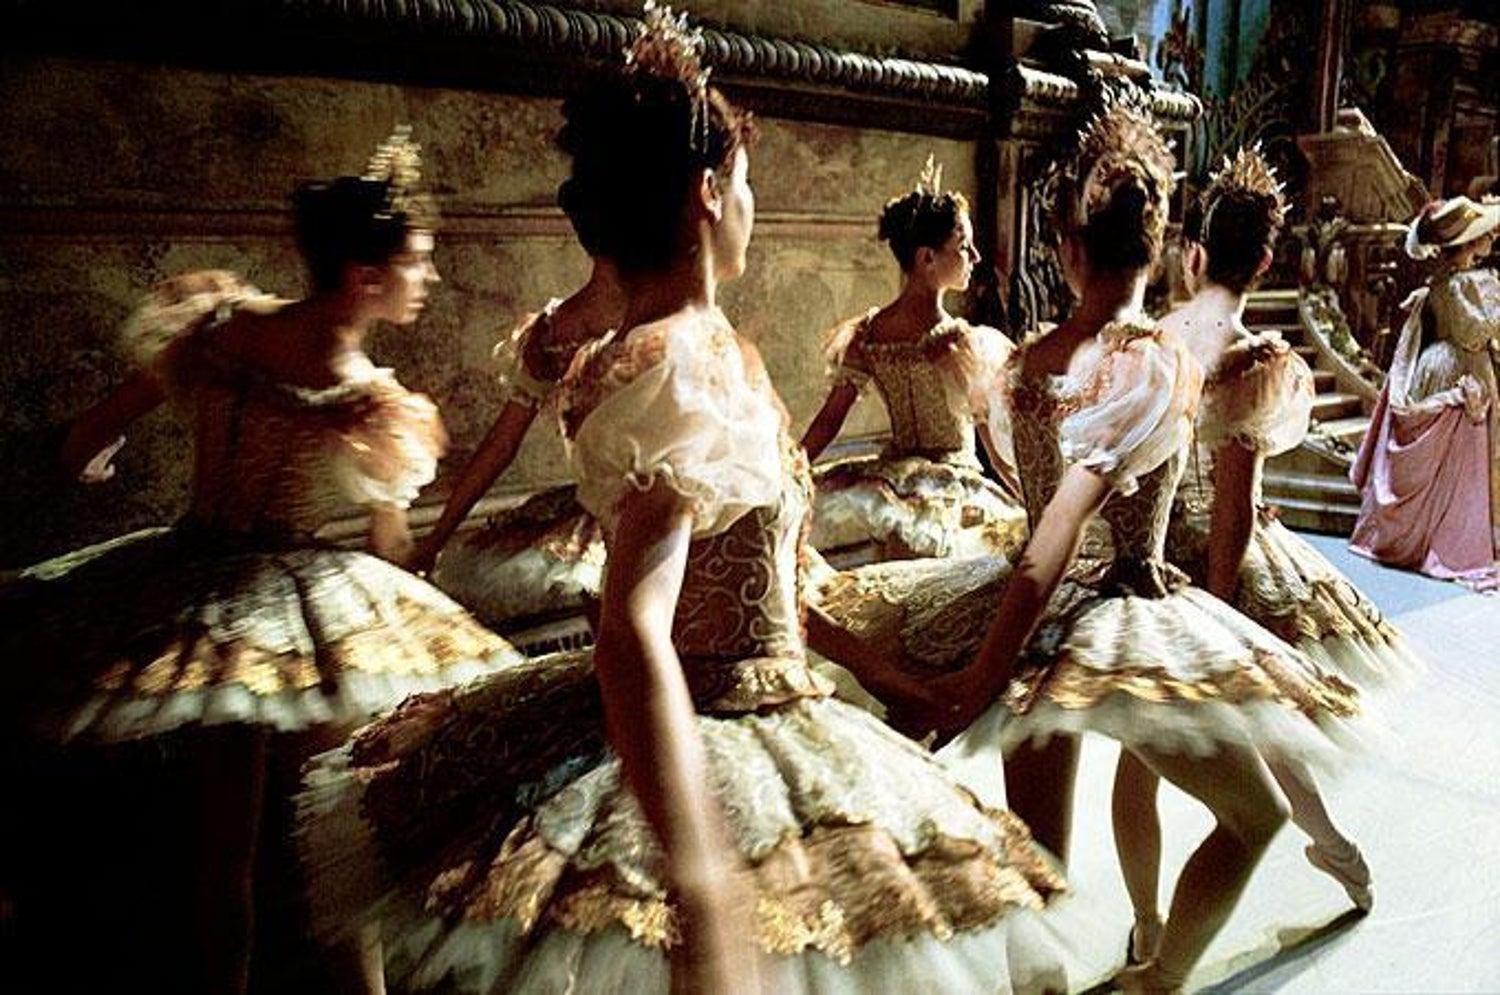 Ballet de l'Opéra National de Paris III - the wonderful dancers performing - Photograph by Gérard Uféras